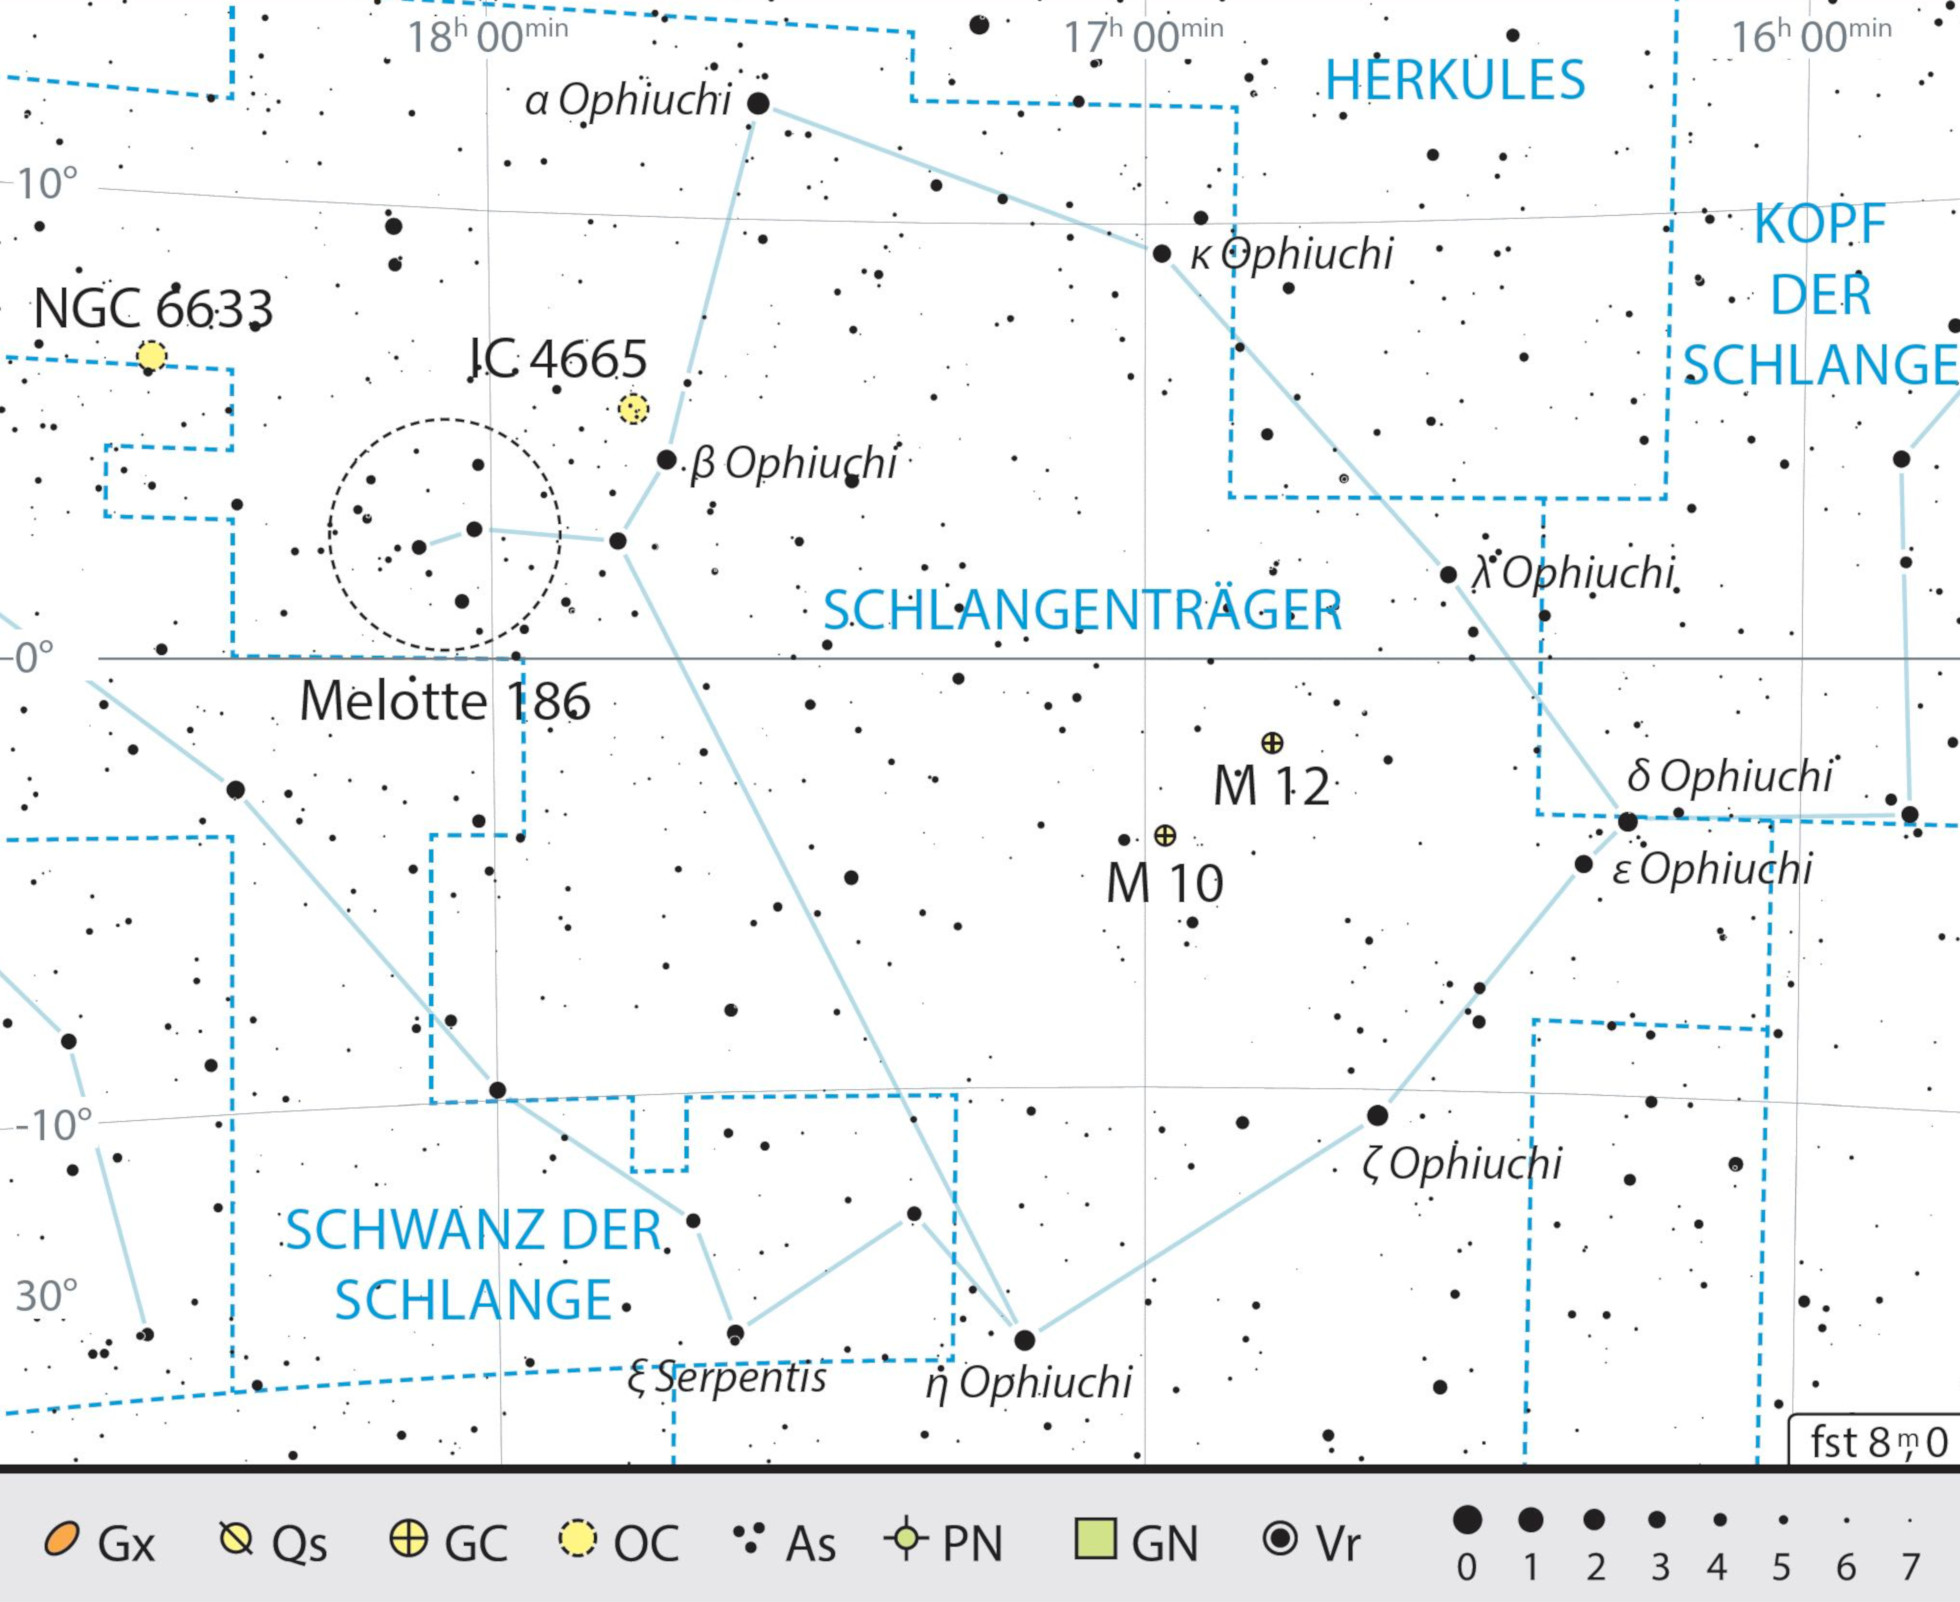 Mapa geral da constelação Serpentário com as recomendações de observação. J. Scholten 